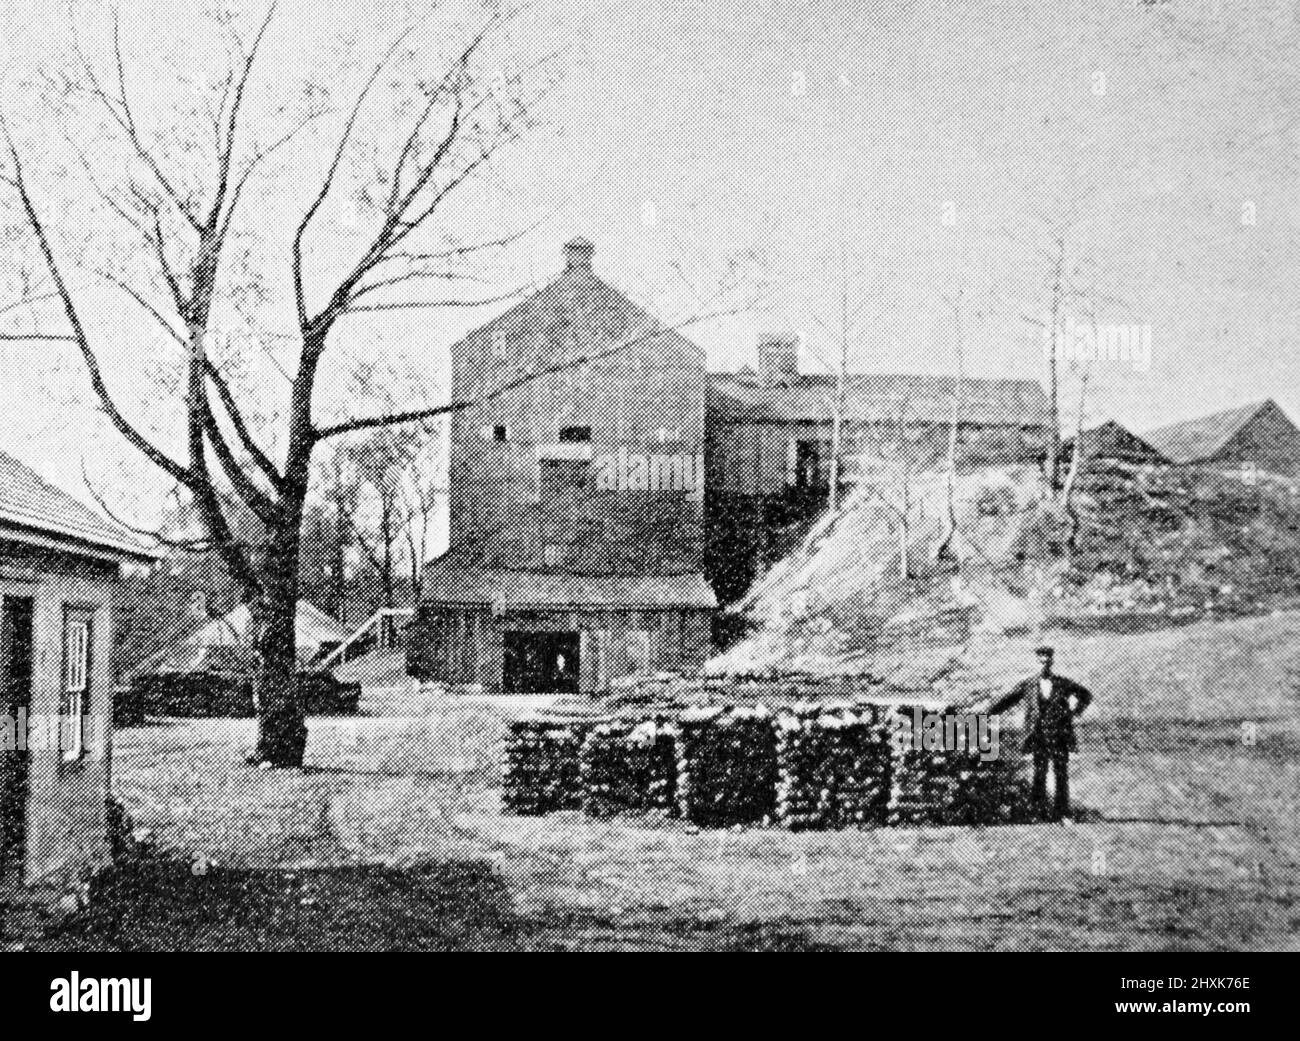 Un horno de carbón de Nueva Inglaterra en el 1890s; fotografía en blanco y negro tomada alrededor de 1890s Foto de stock